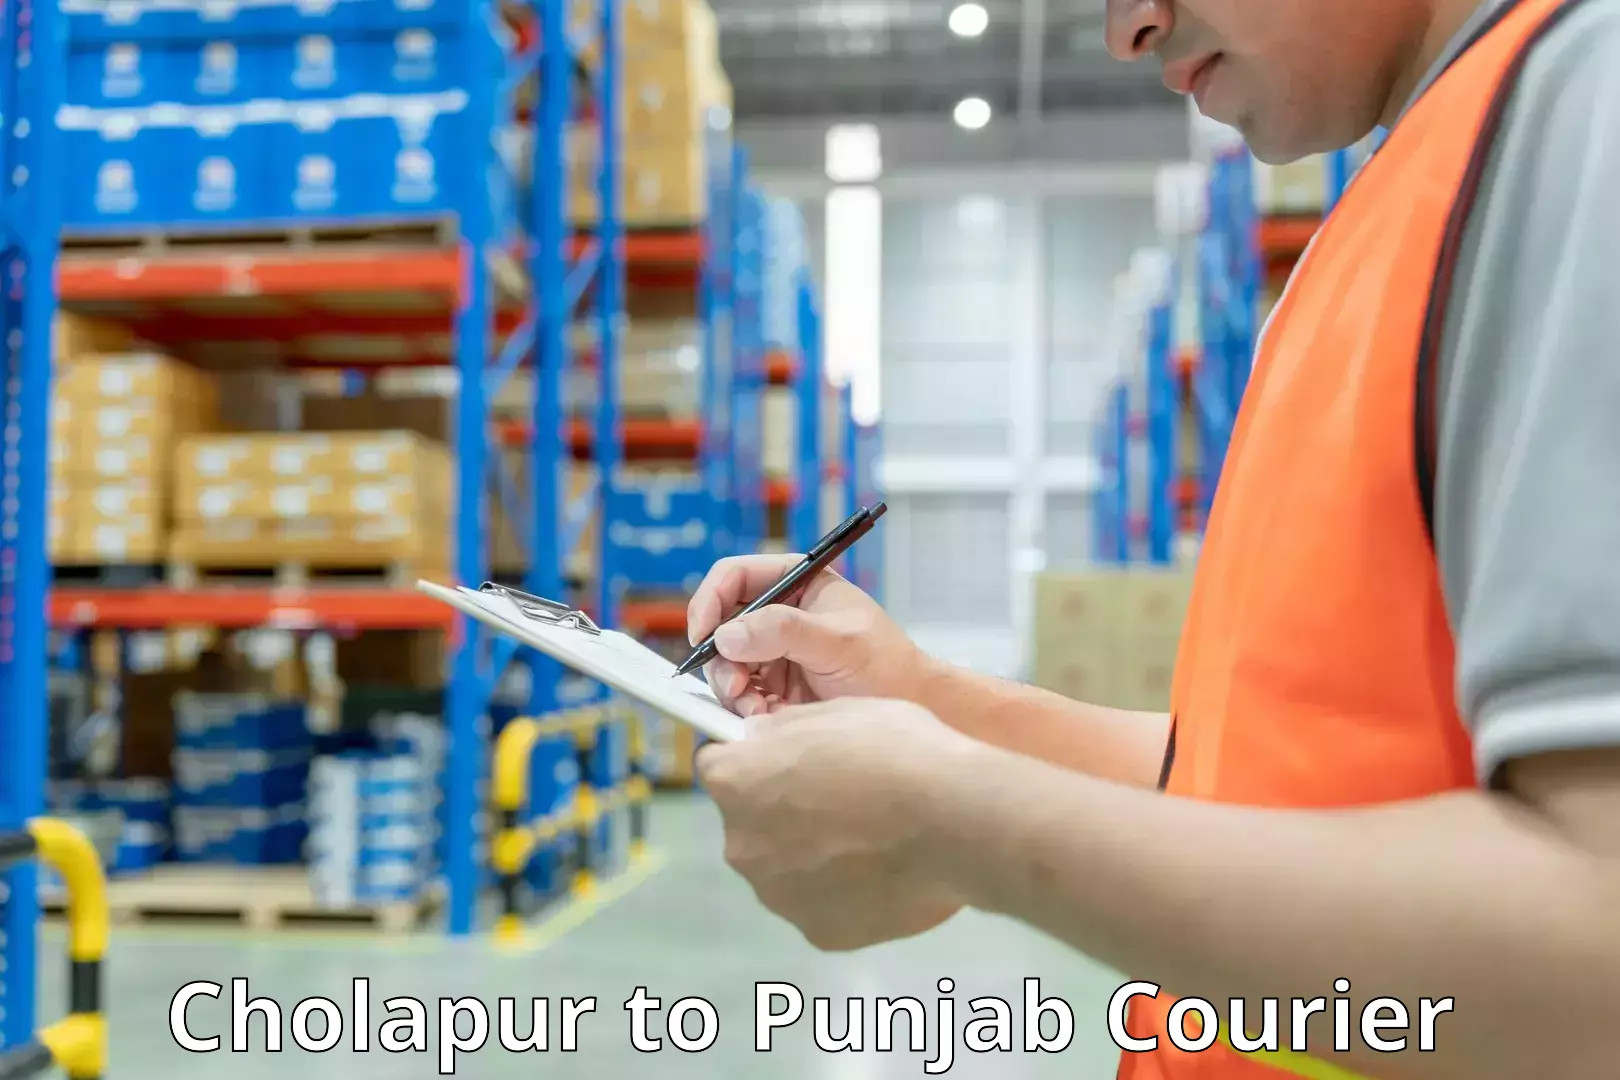 Baggage shipping experts Cholapur to Punjab